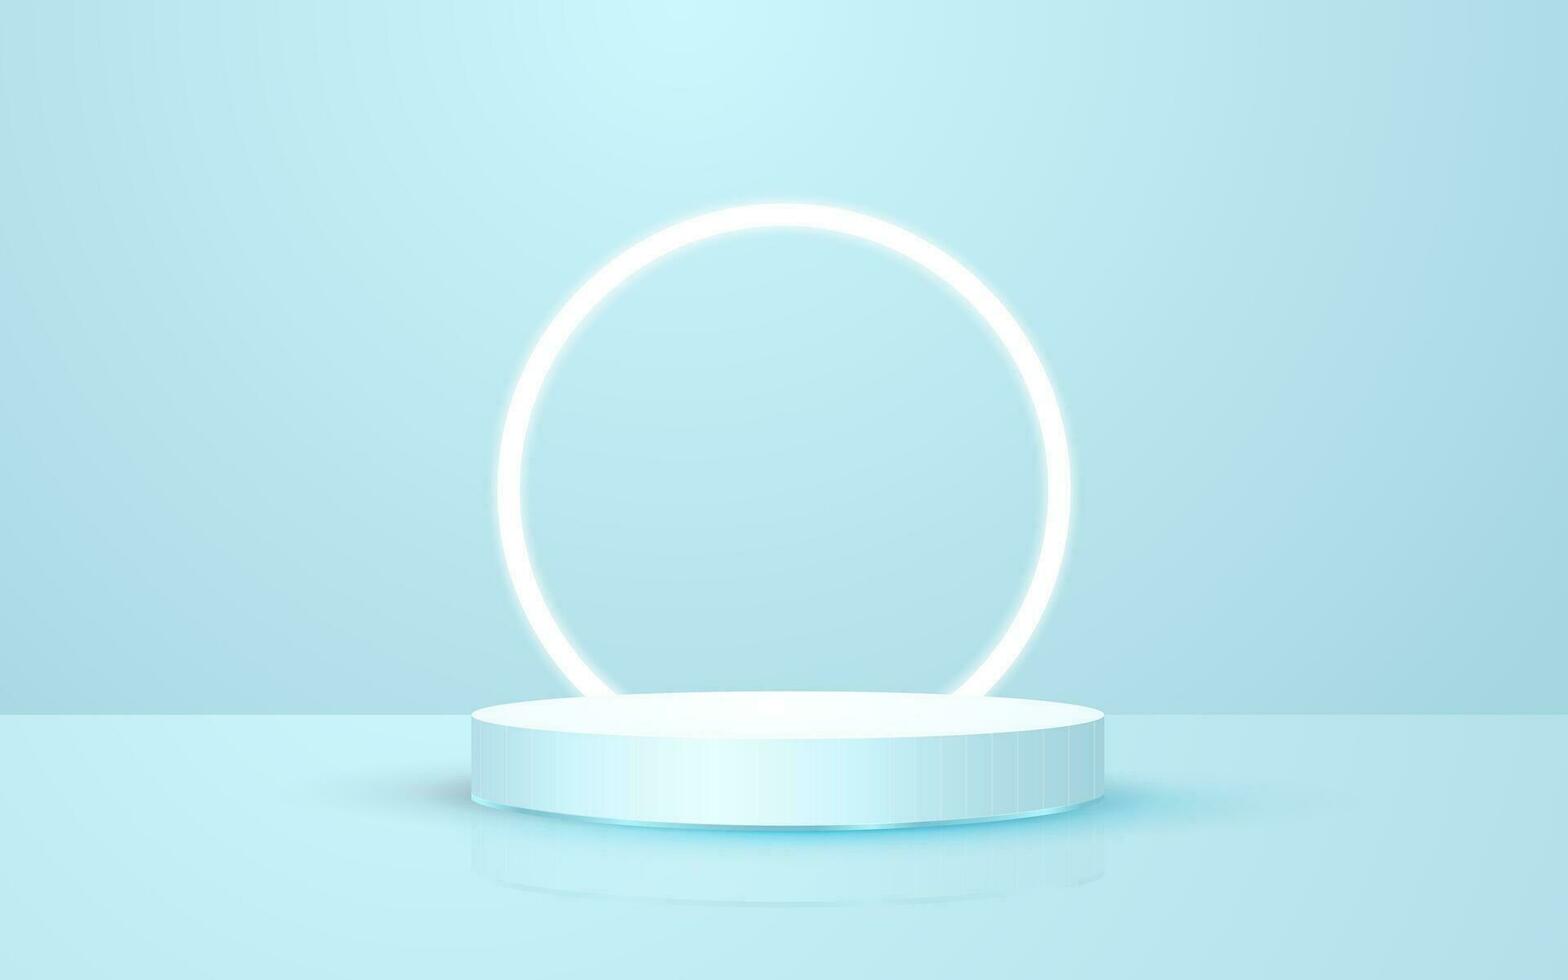 3d Szene Pastell- Blau runden Podium Hintergrund mit Kreis Neon- Beleuchtung perfekt zum Veranstaltung Beförderung kosmetisch Produkt Präsentation Attrappe, Lehrmodell, Simulation vektor